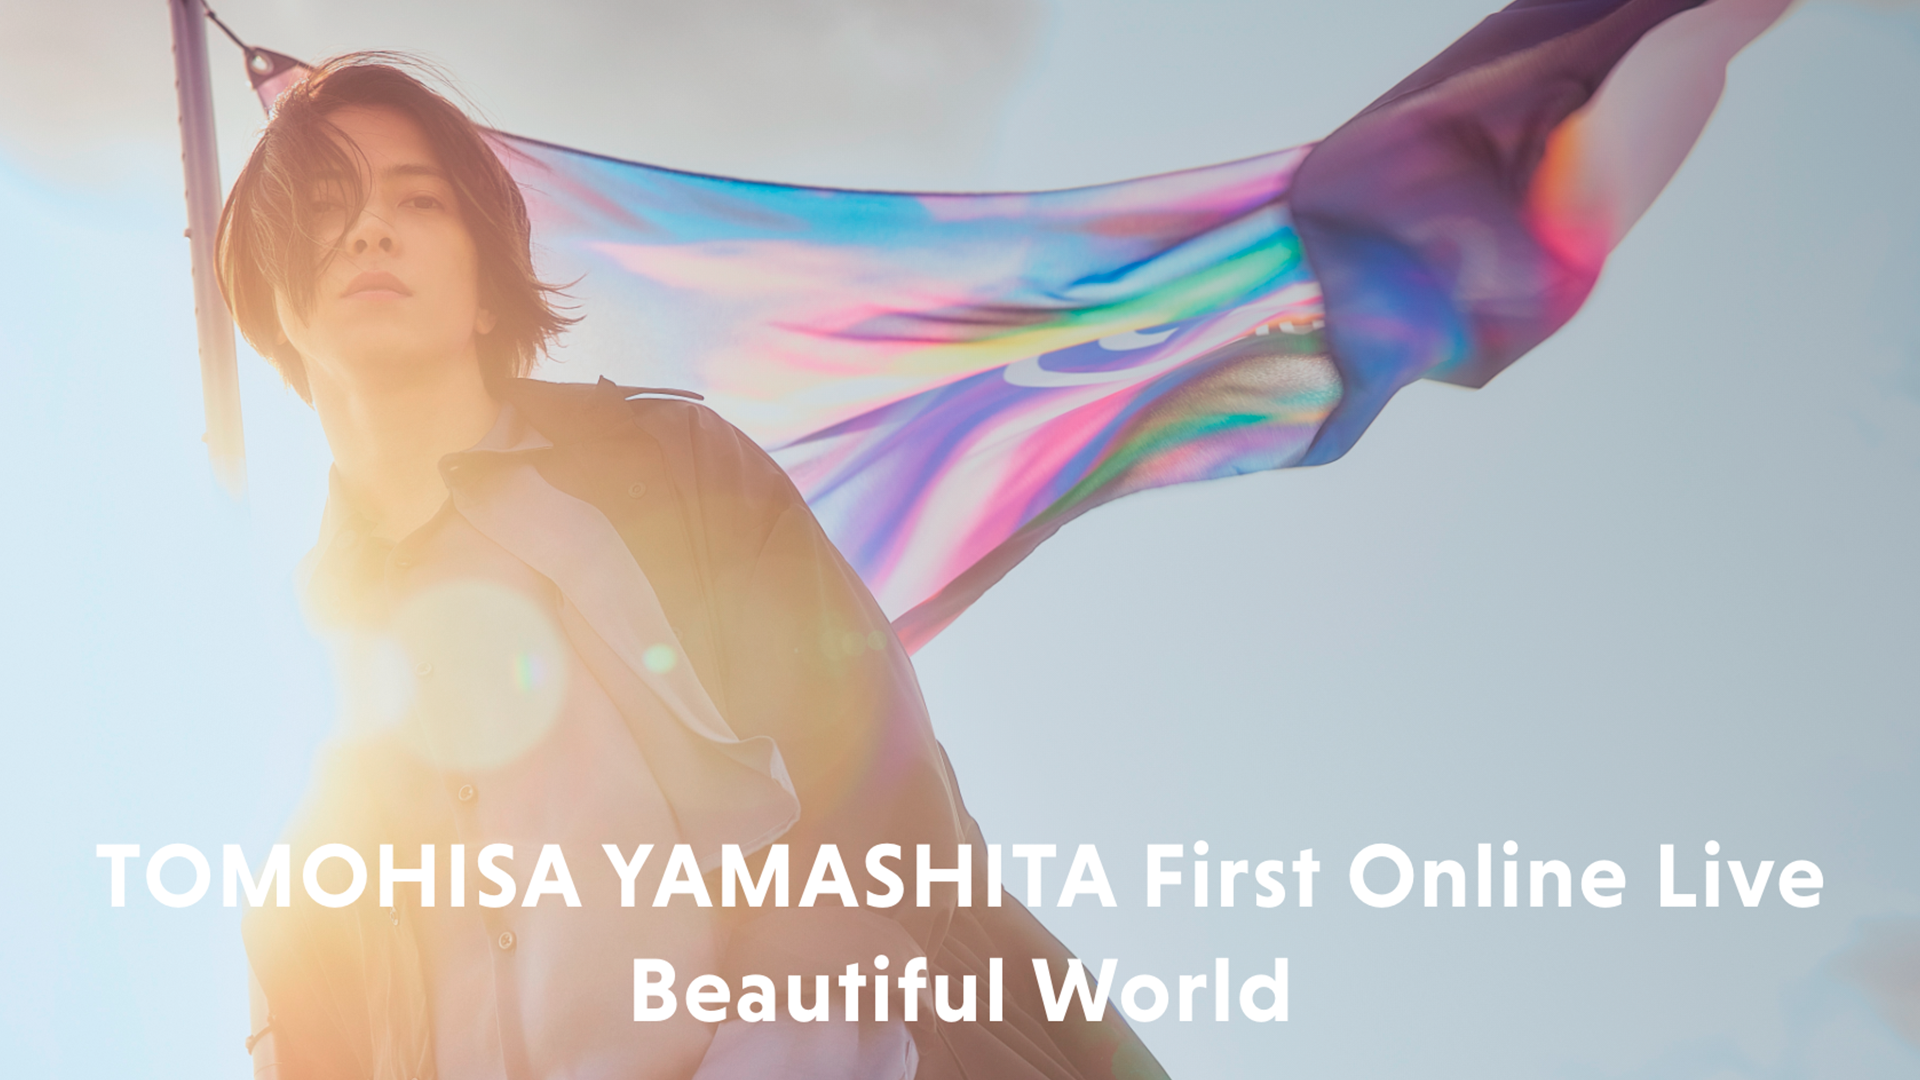 ABEMA PPV ONLINE LIVE「TOMOHISA YAMASHITA First Online Live “Beautiful World”」